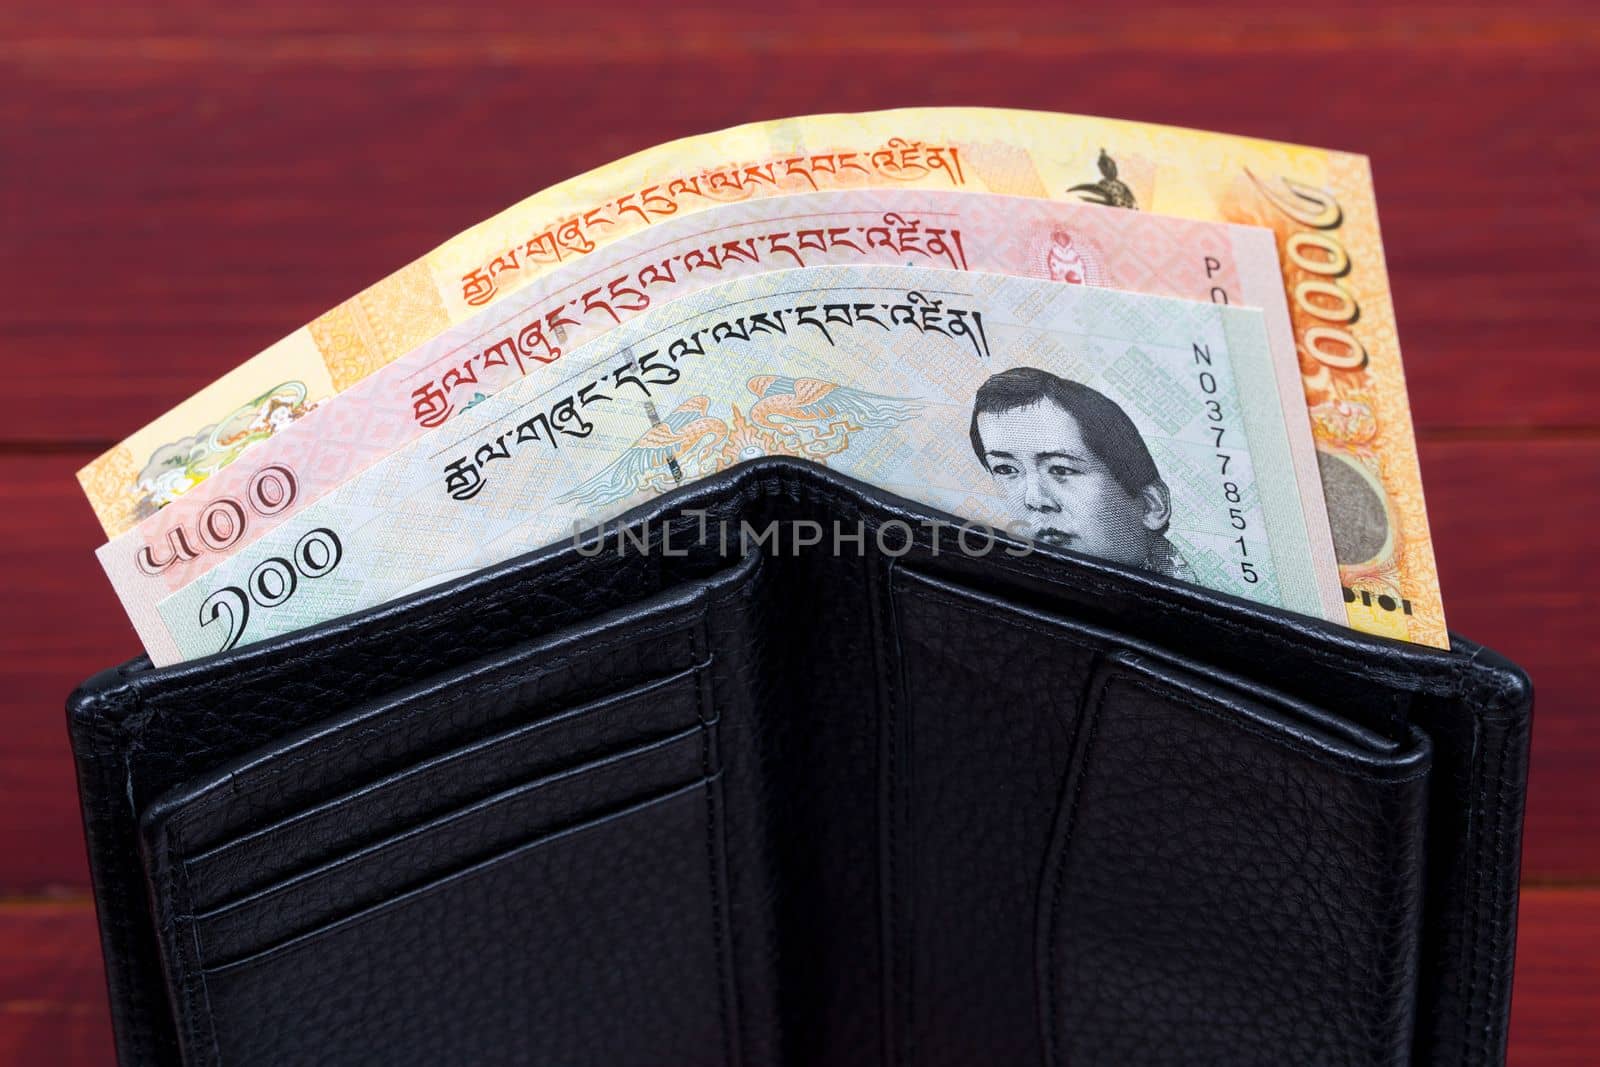 Bhutanese money in the black wallet by johan10